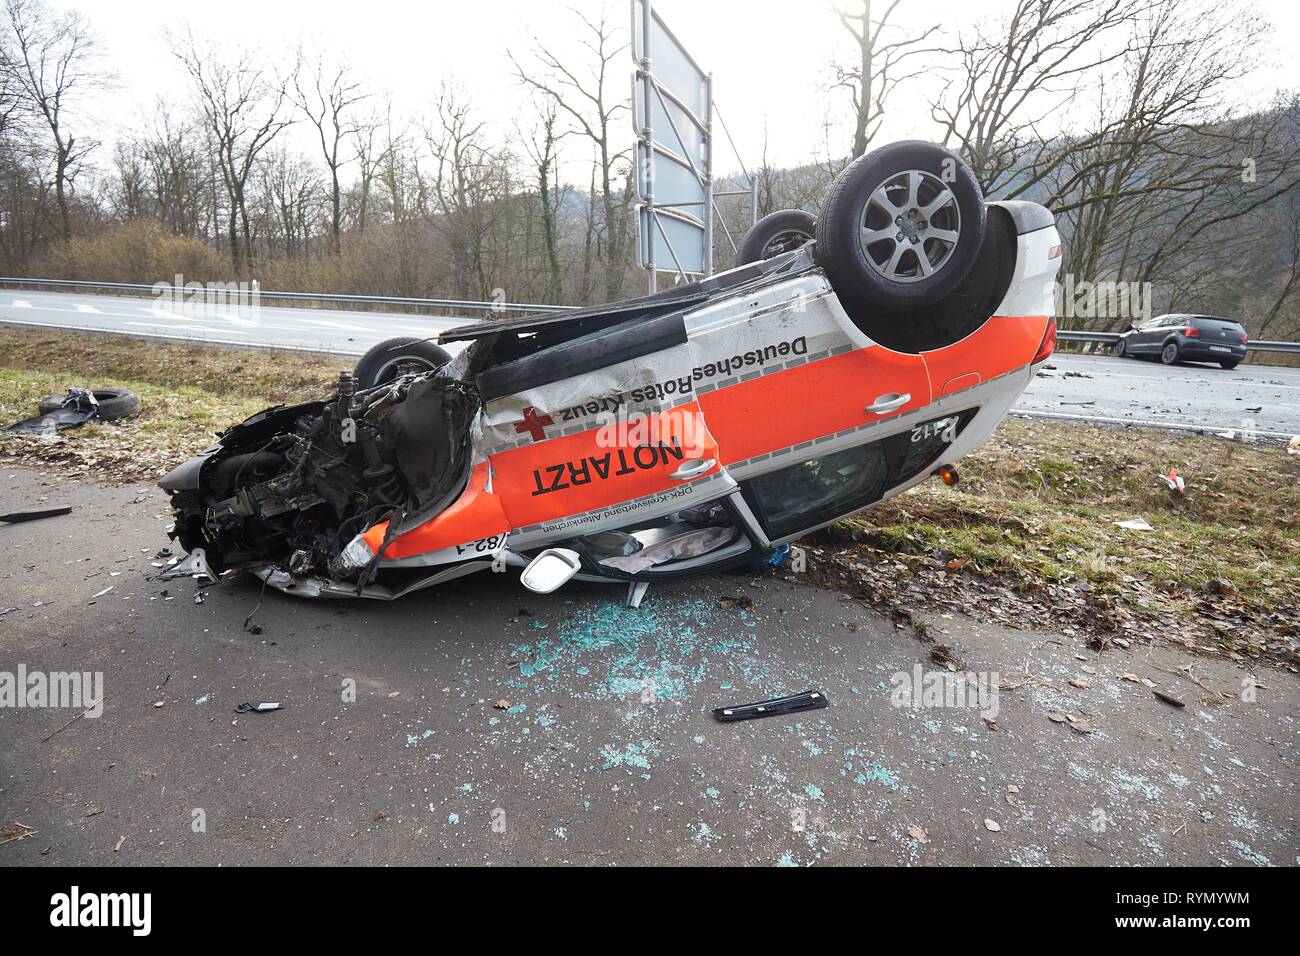 El médico de emergencia ambulancia volcó en colisión con el automóvil, accidente en el B414, Renania-Palatinado, Alemania Foto de stock